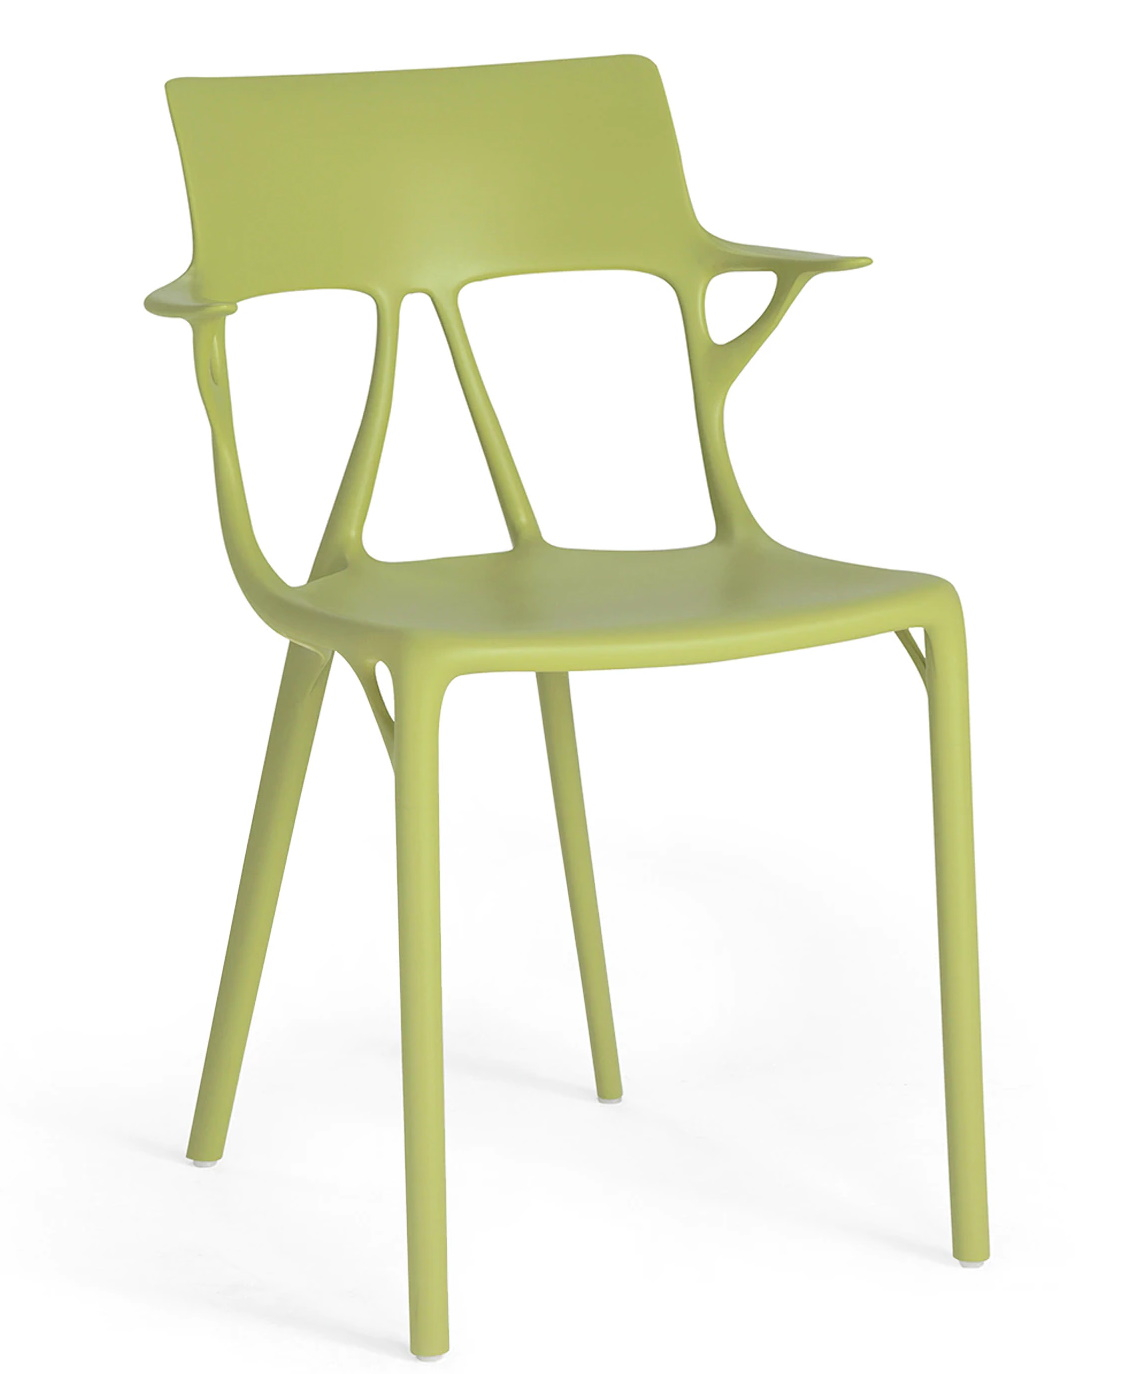 Scaun Kartell A.I. design Philippe Starck verde Kartell imagine reduss.ro 2022